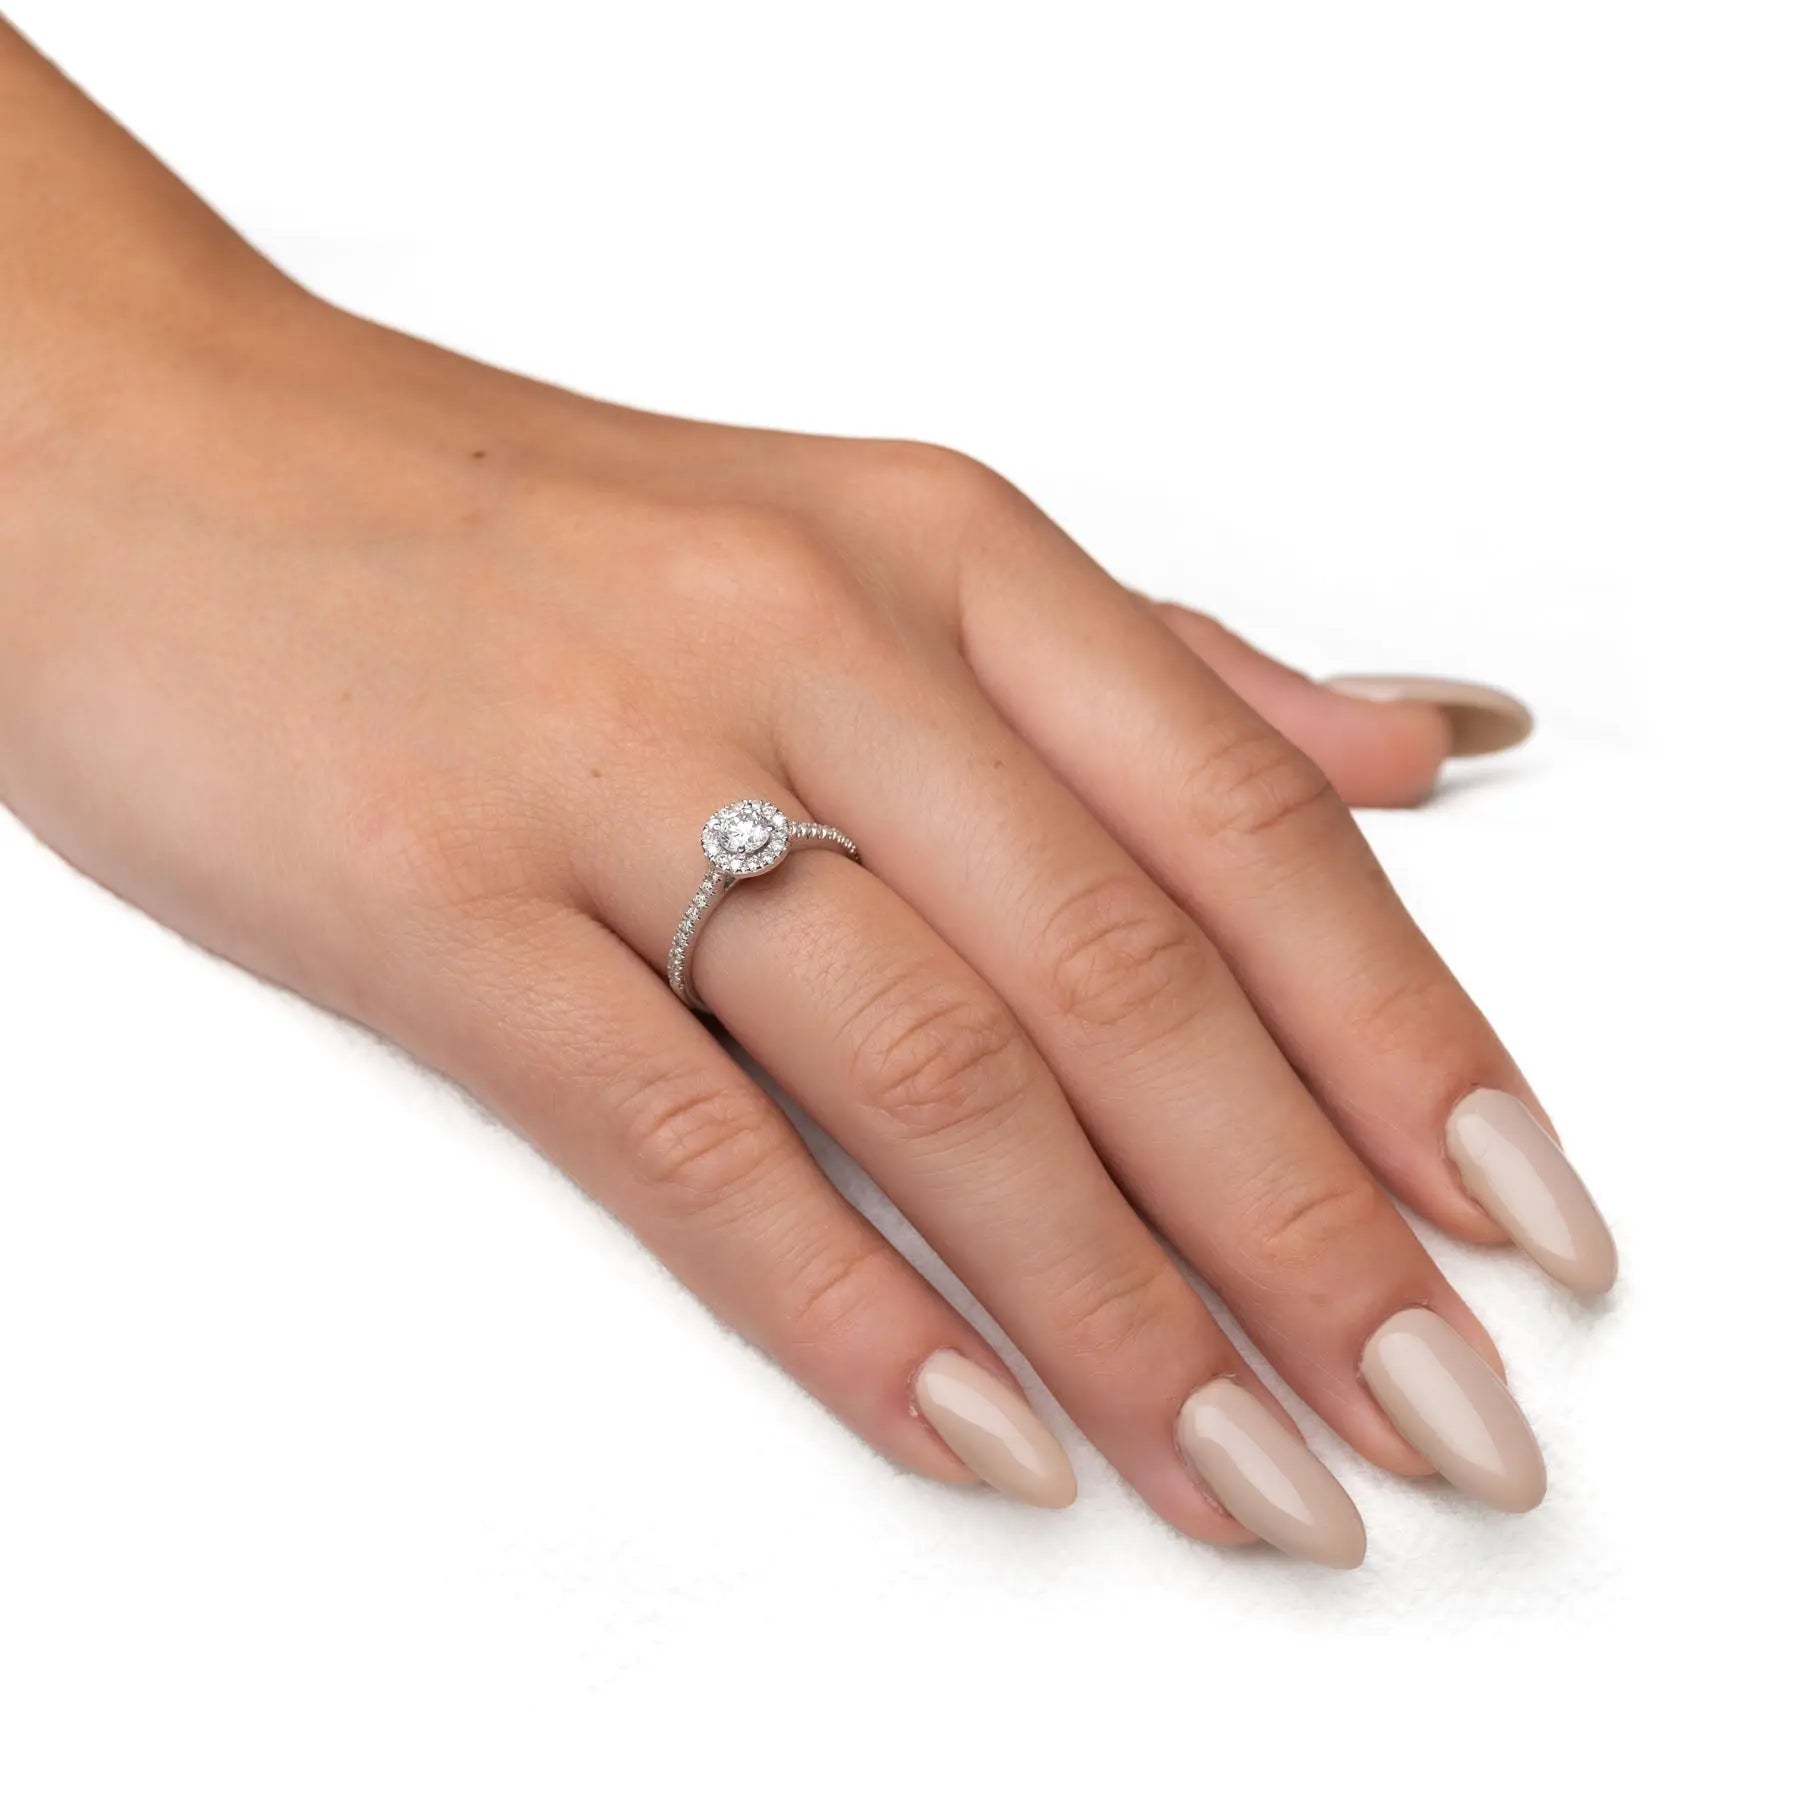 טבעת אירוסין עינב Fermond Jewelery  טבעת אירוסין עם יהלום טבעי מרכזי מוקף ביהלומים-  סה"כ משובצים 0.38 קראט, המכילה 26 יהלומים טבעיים צדדיים במשקל של 0.18 קראט, יהלום מרכזי של 0.2 קראט. זהב לבן. הטבעת הזו משלבת את היוקרה והברק של טבעת יהלומים עם האלגנטיות הנצחית, ומציעה יופי ואופנה שמתאימים לכל אירוע.